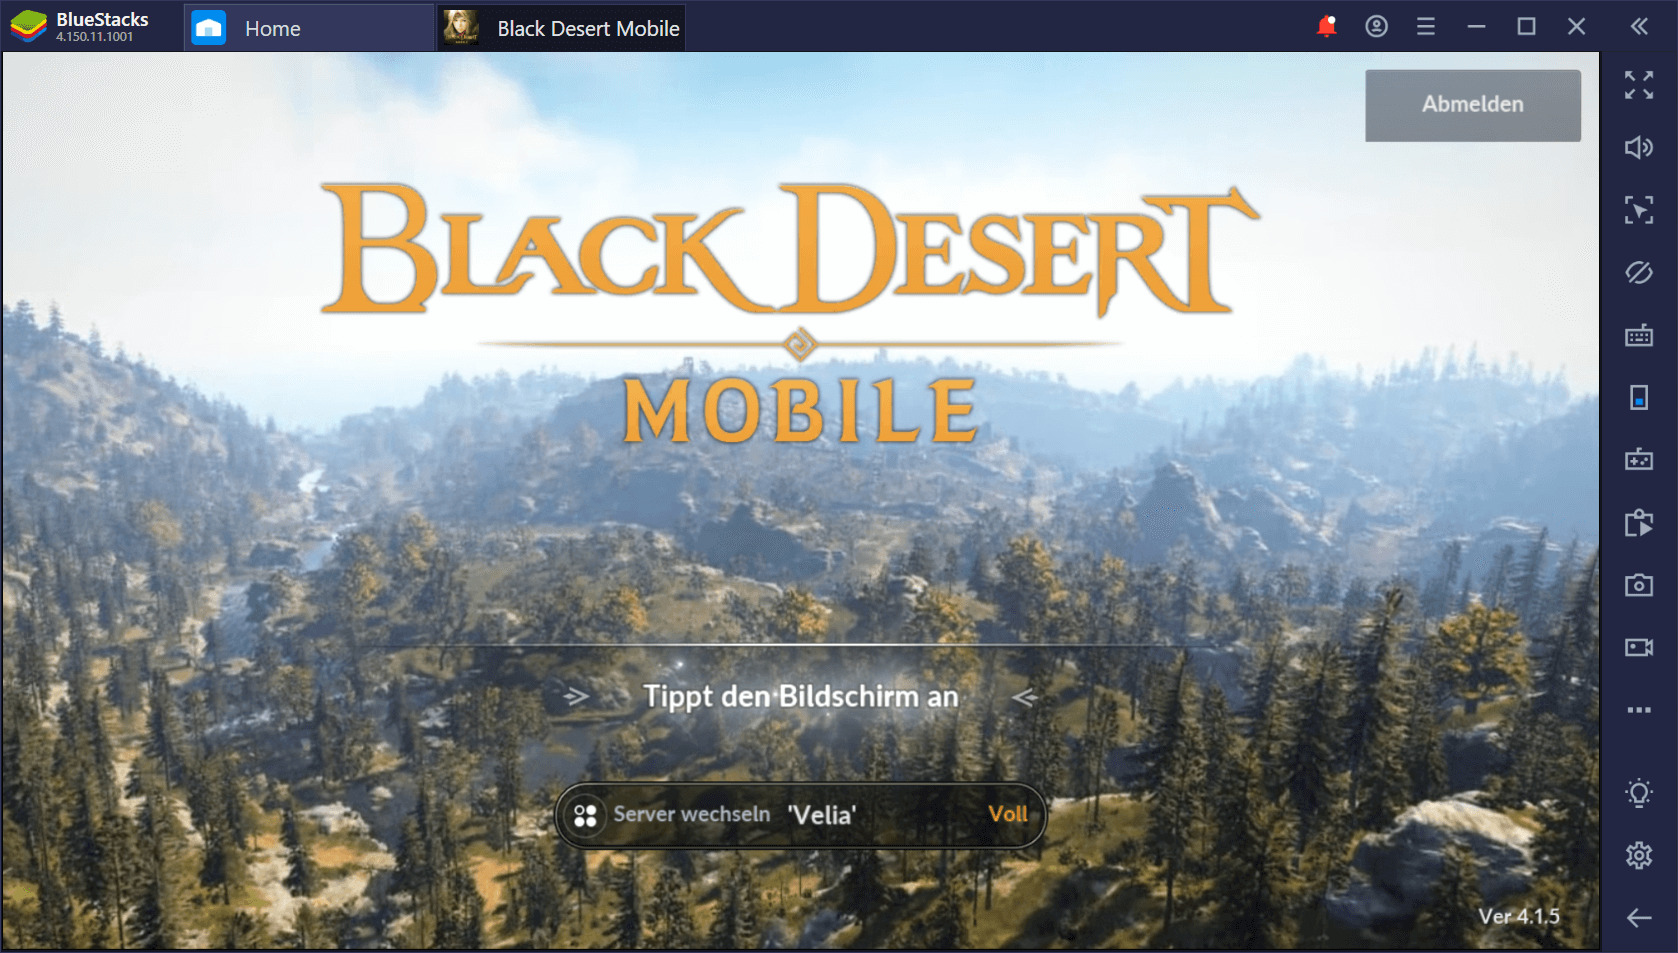 Black Desert Mobile auf dem PC: So steigst du schnell auf